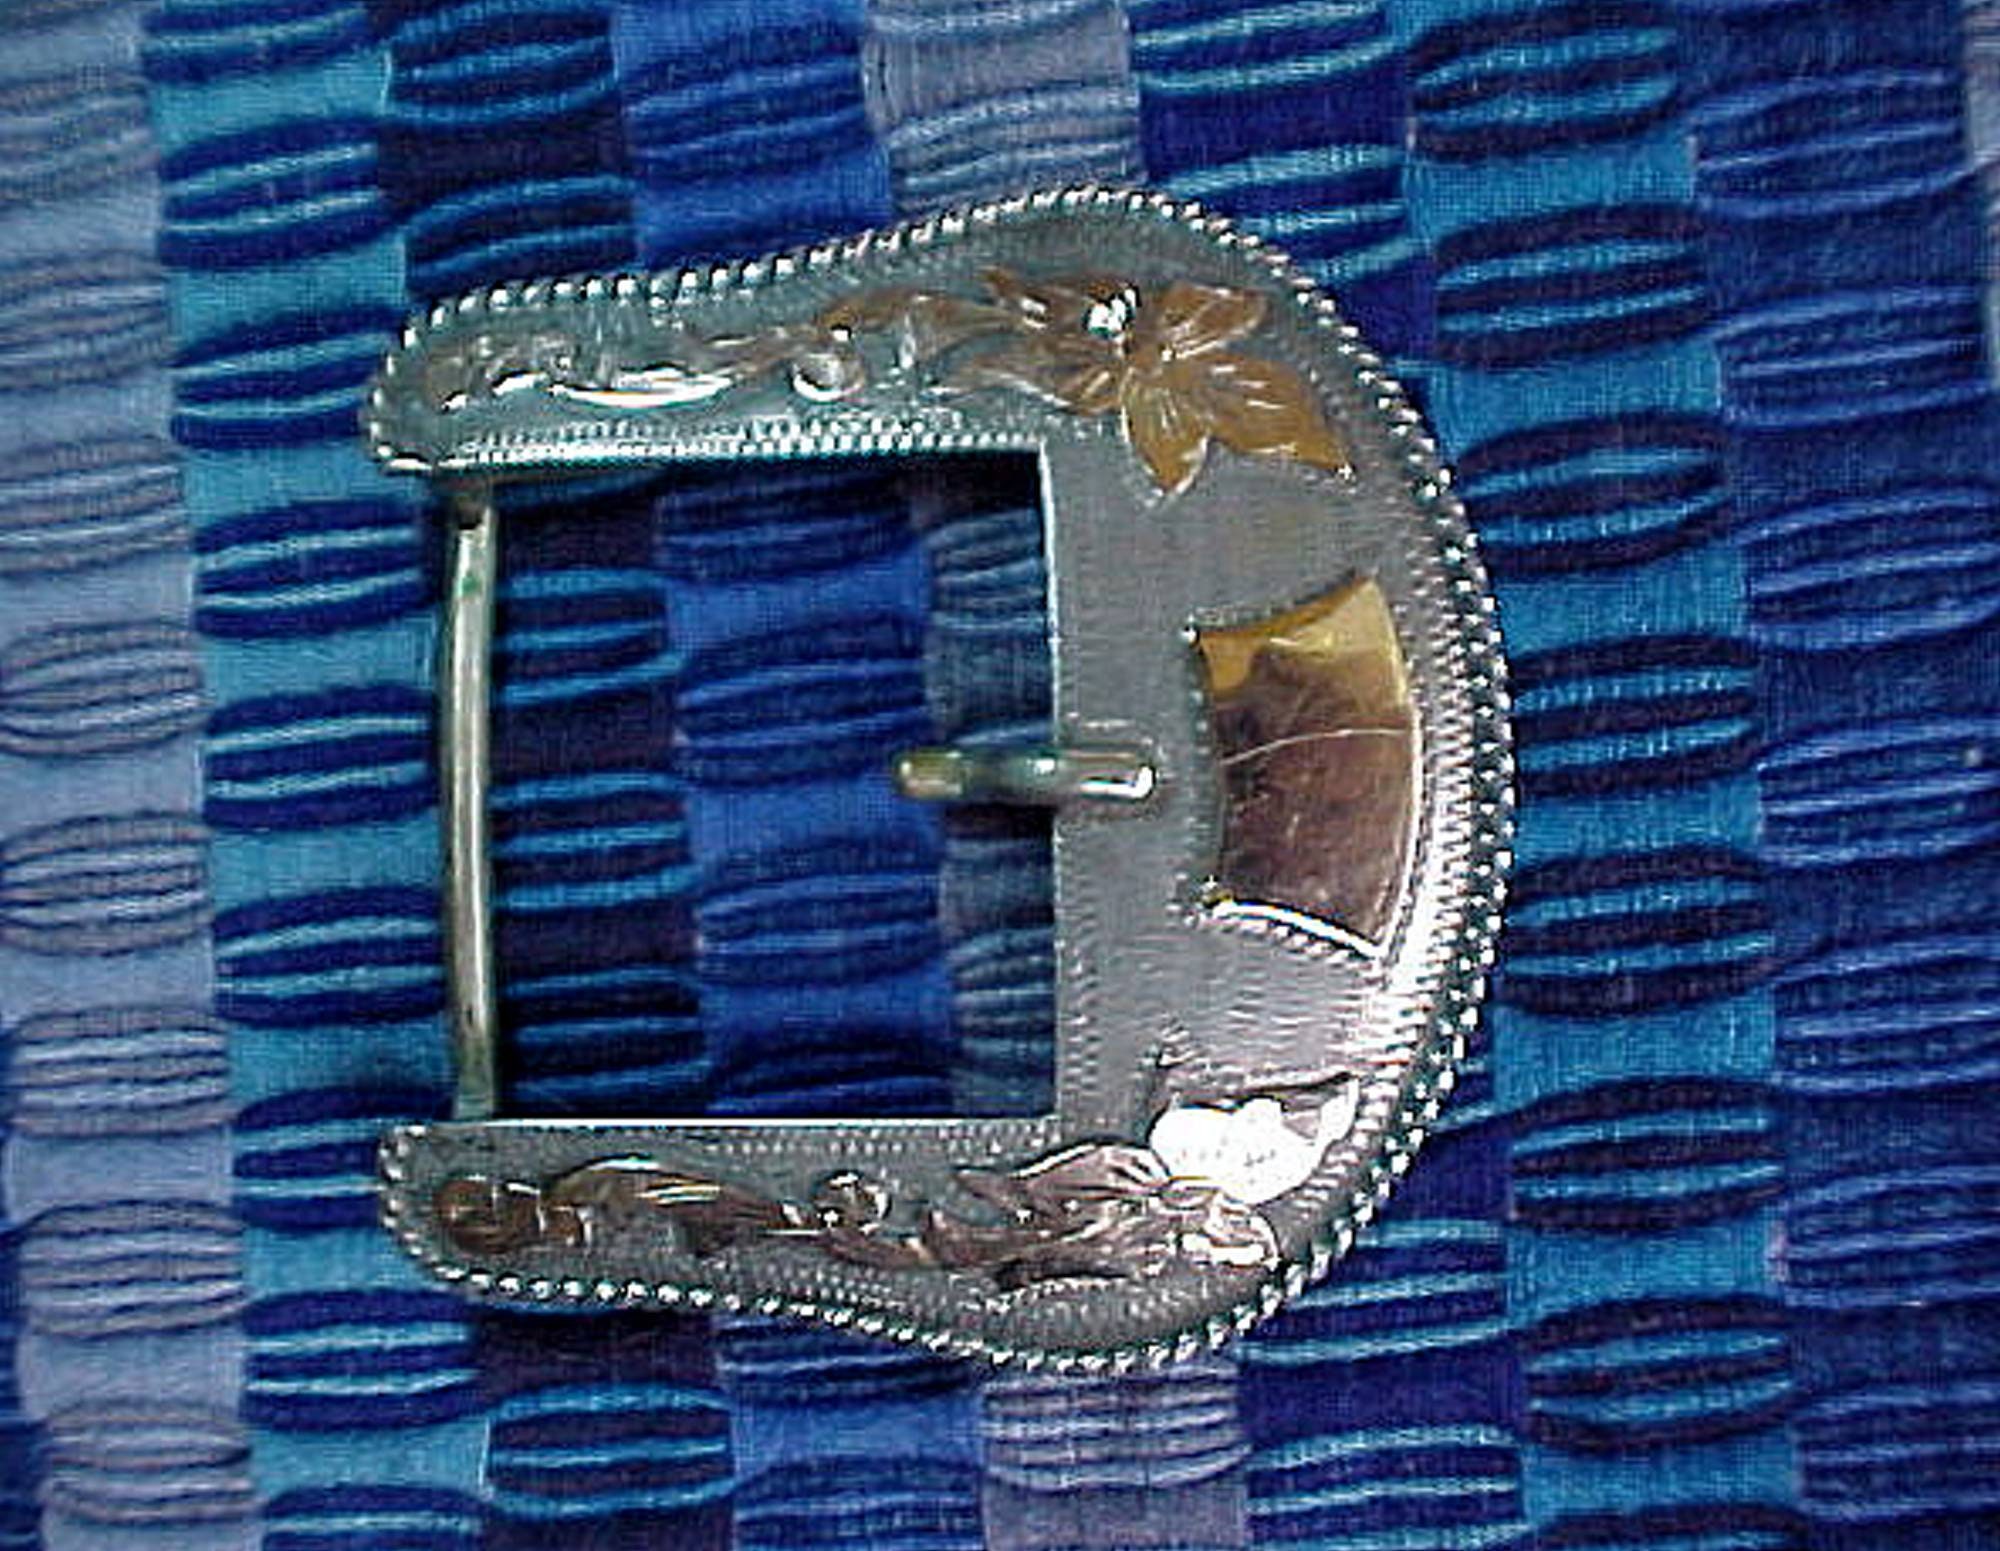 Vogt Engraved New Yorker Single Sterling Silver Belt Buckle